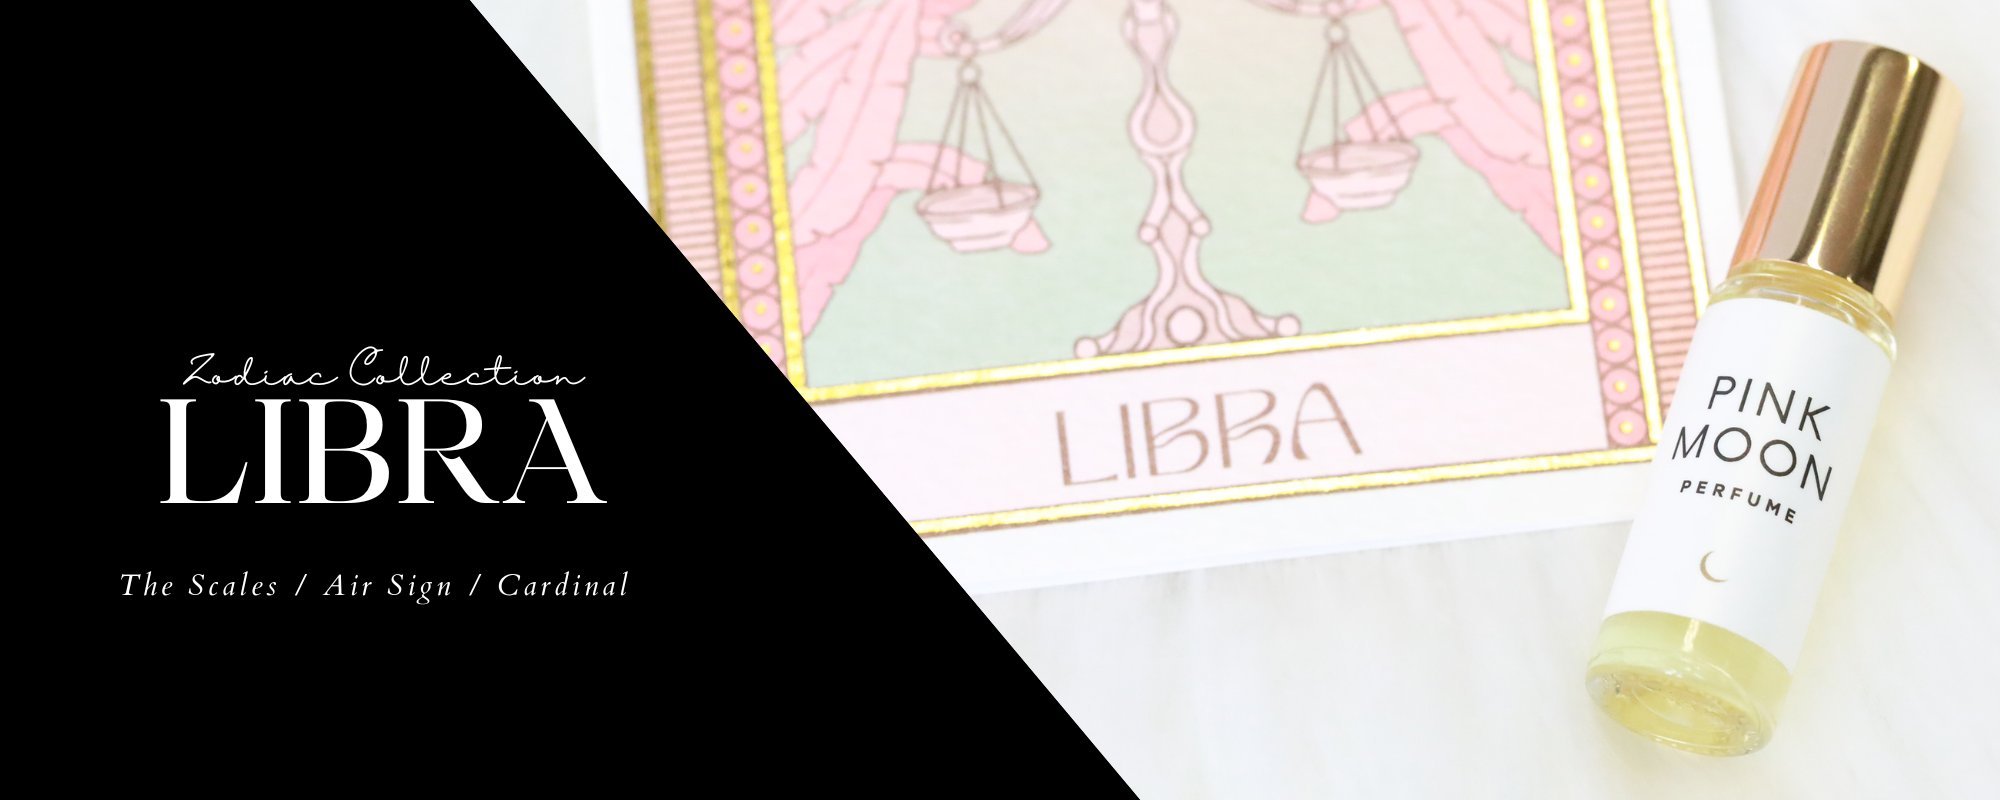 Libra zodiac sign gift collection image header